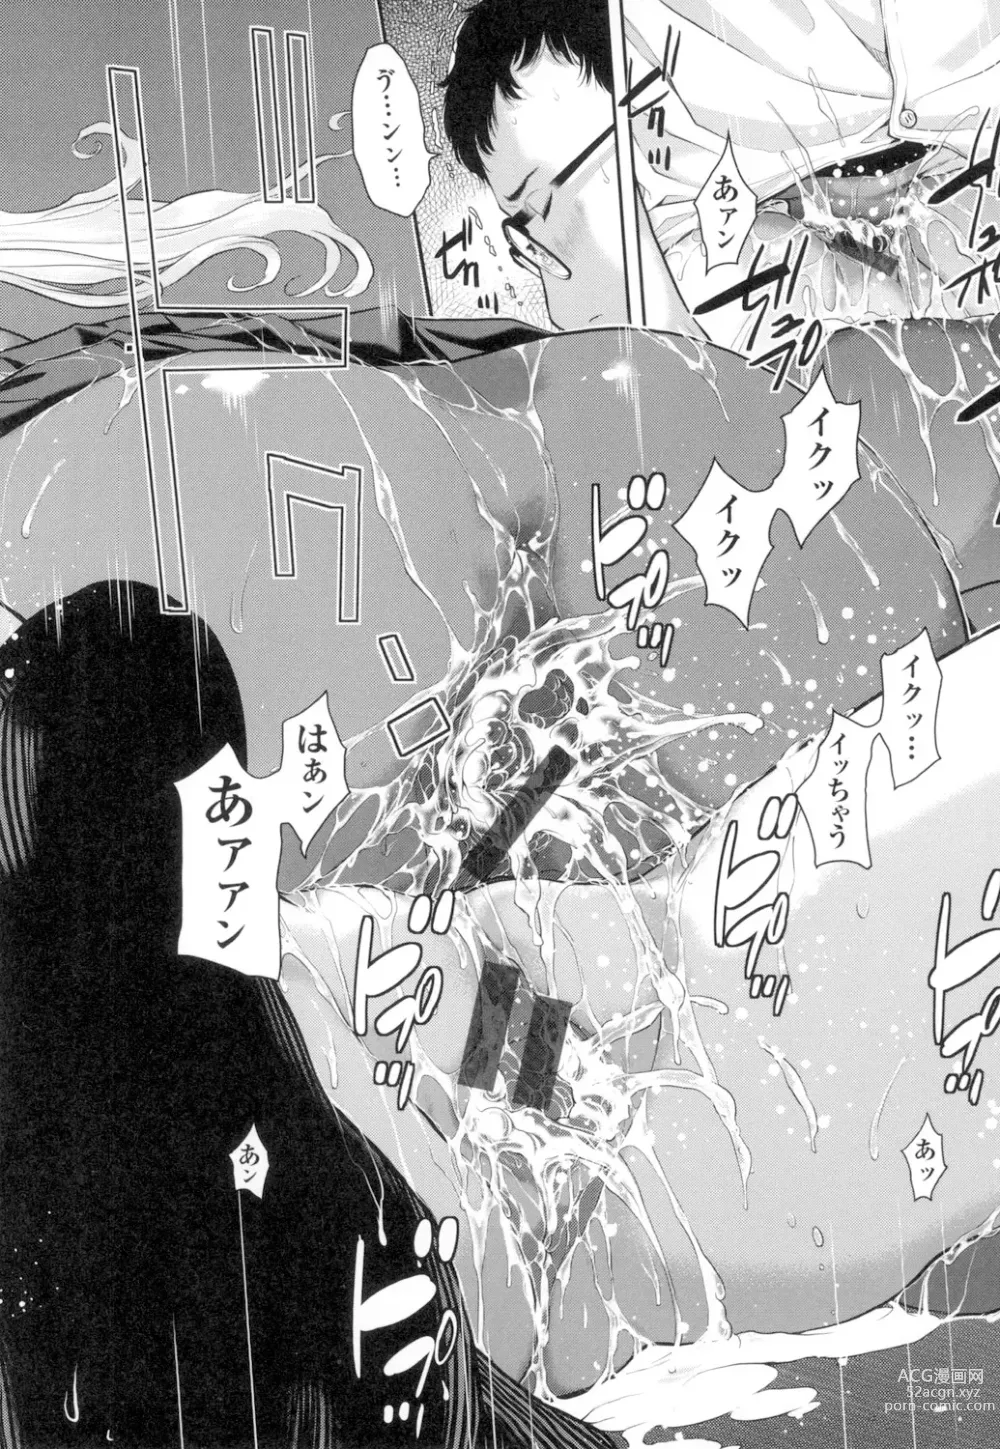 Page 209 of manga Seifuku Shijou Shugi -Natsu-